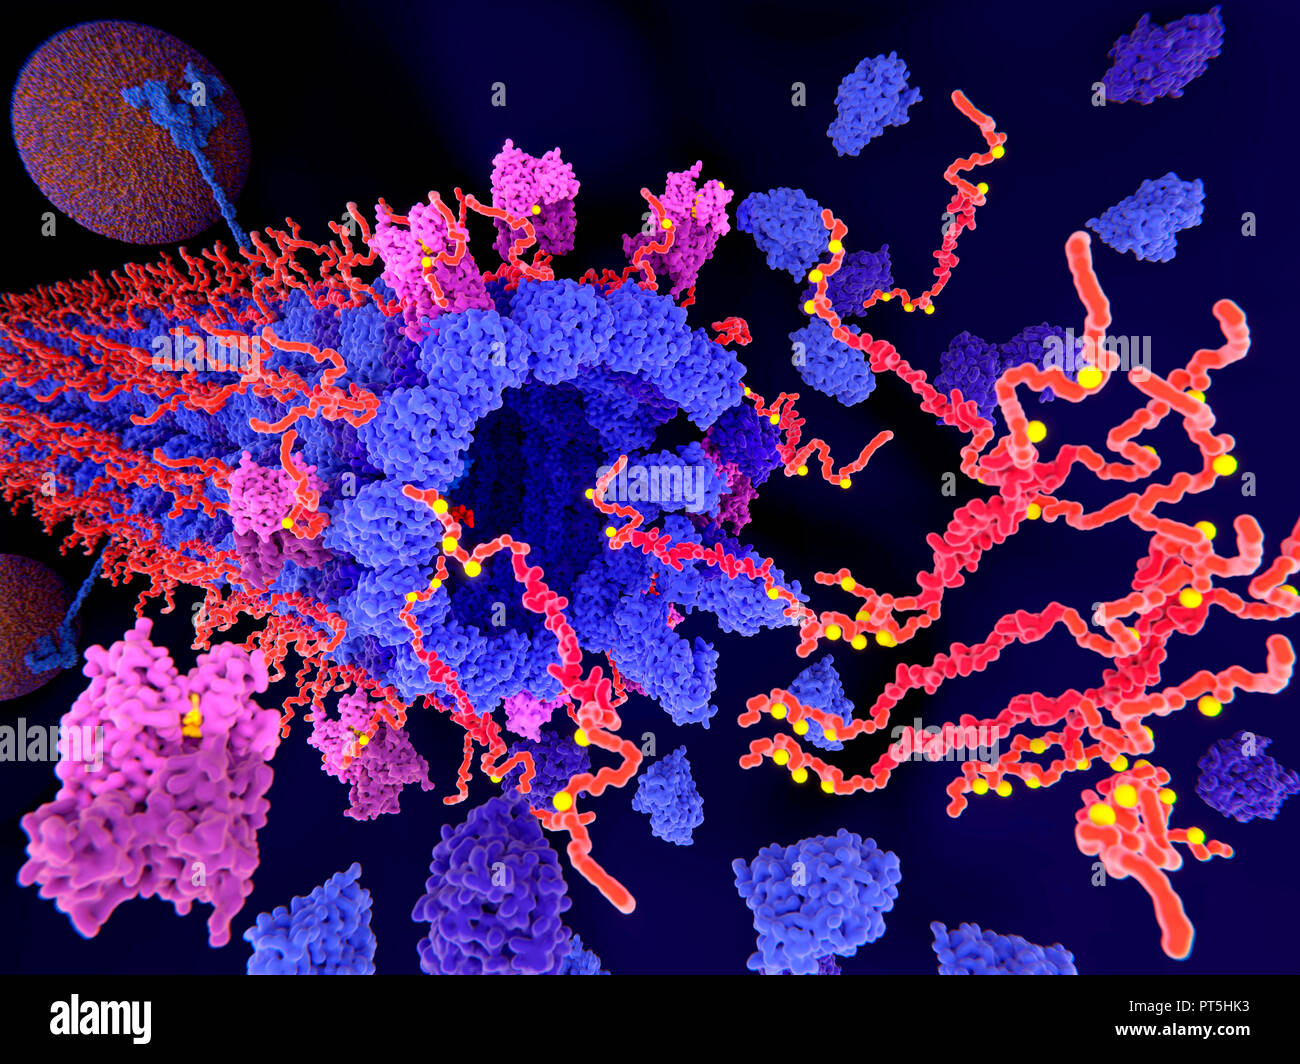 La proteina tau nella malattia di Alzheimer,illustrazione.fosforilazione patologica (giallo) di proteine Tau (rosso-arancione) mediante chinasi (blu-viola) influenzare le cellule nervose in quello che è chiamato un grovigli neurofibrillari.Questa illustrazione mostra aggregazioni patologiche delle proteine tau causando la disintegrazione di una microtubula (struttura cilindrica).Il trasporto di vescicole sinaptiche (arancione-Blu sfere,uno in alto a sinistra) viene anche interrotto.A grovigli neurofibrillari consiste di anormali aggregati e le fibre insolubili della proteina tau. Foto Stock